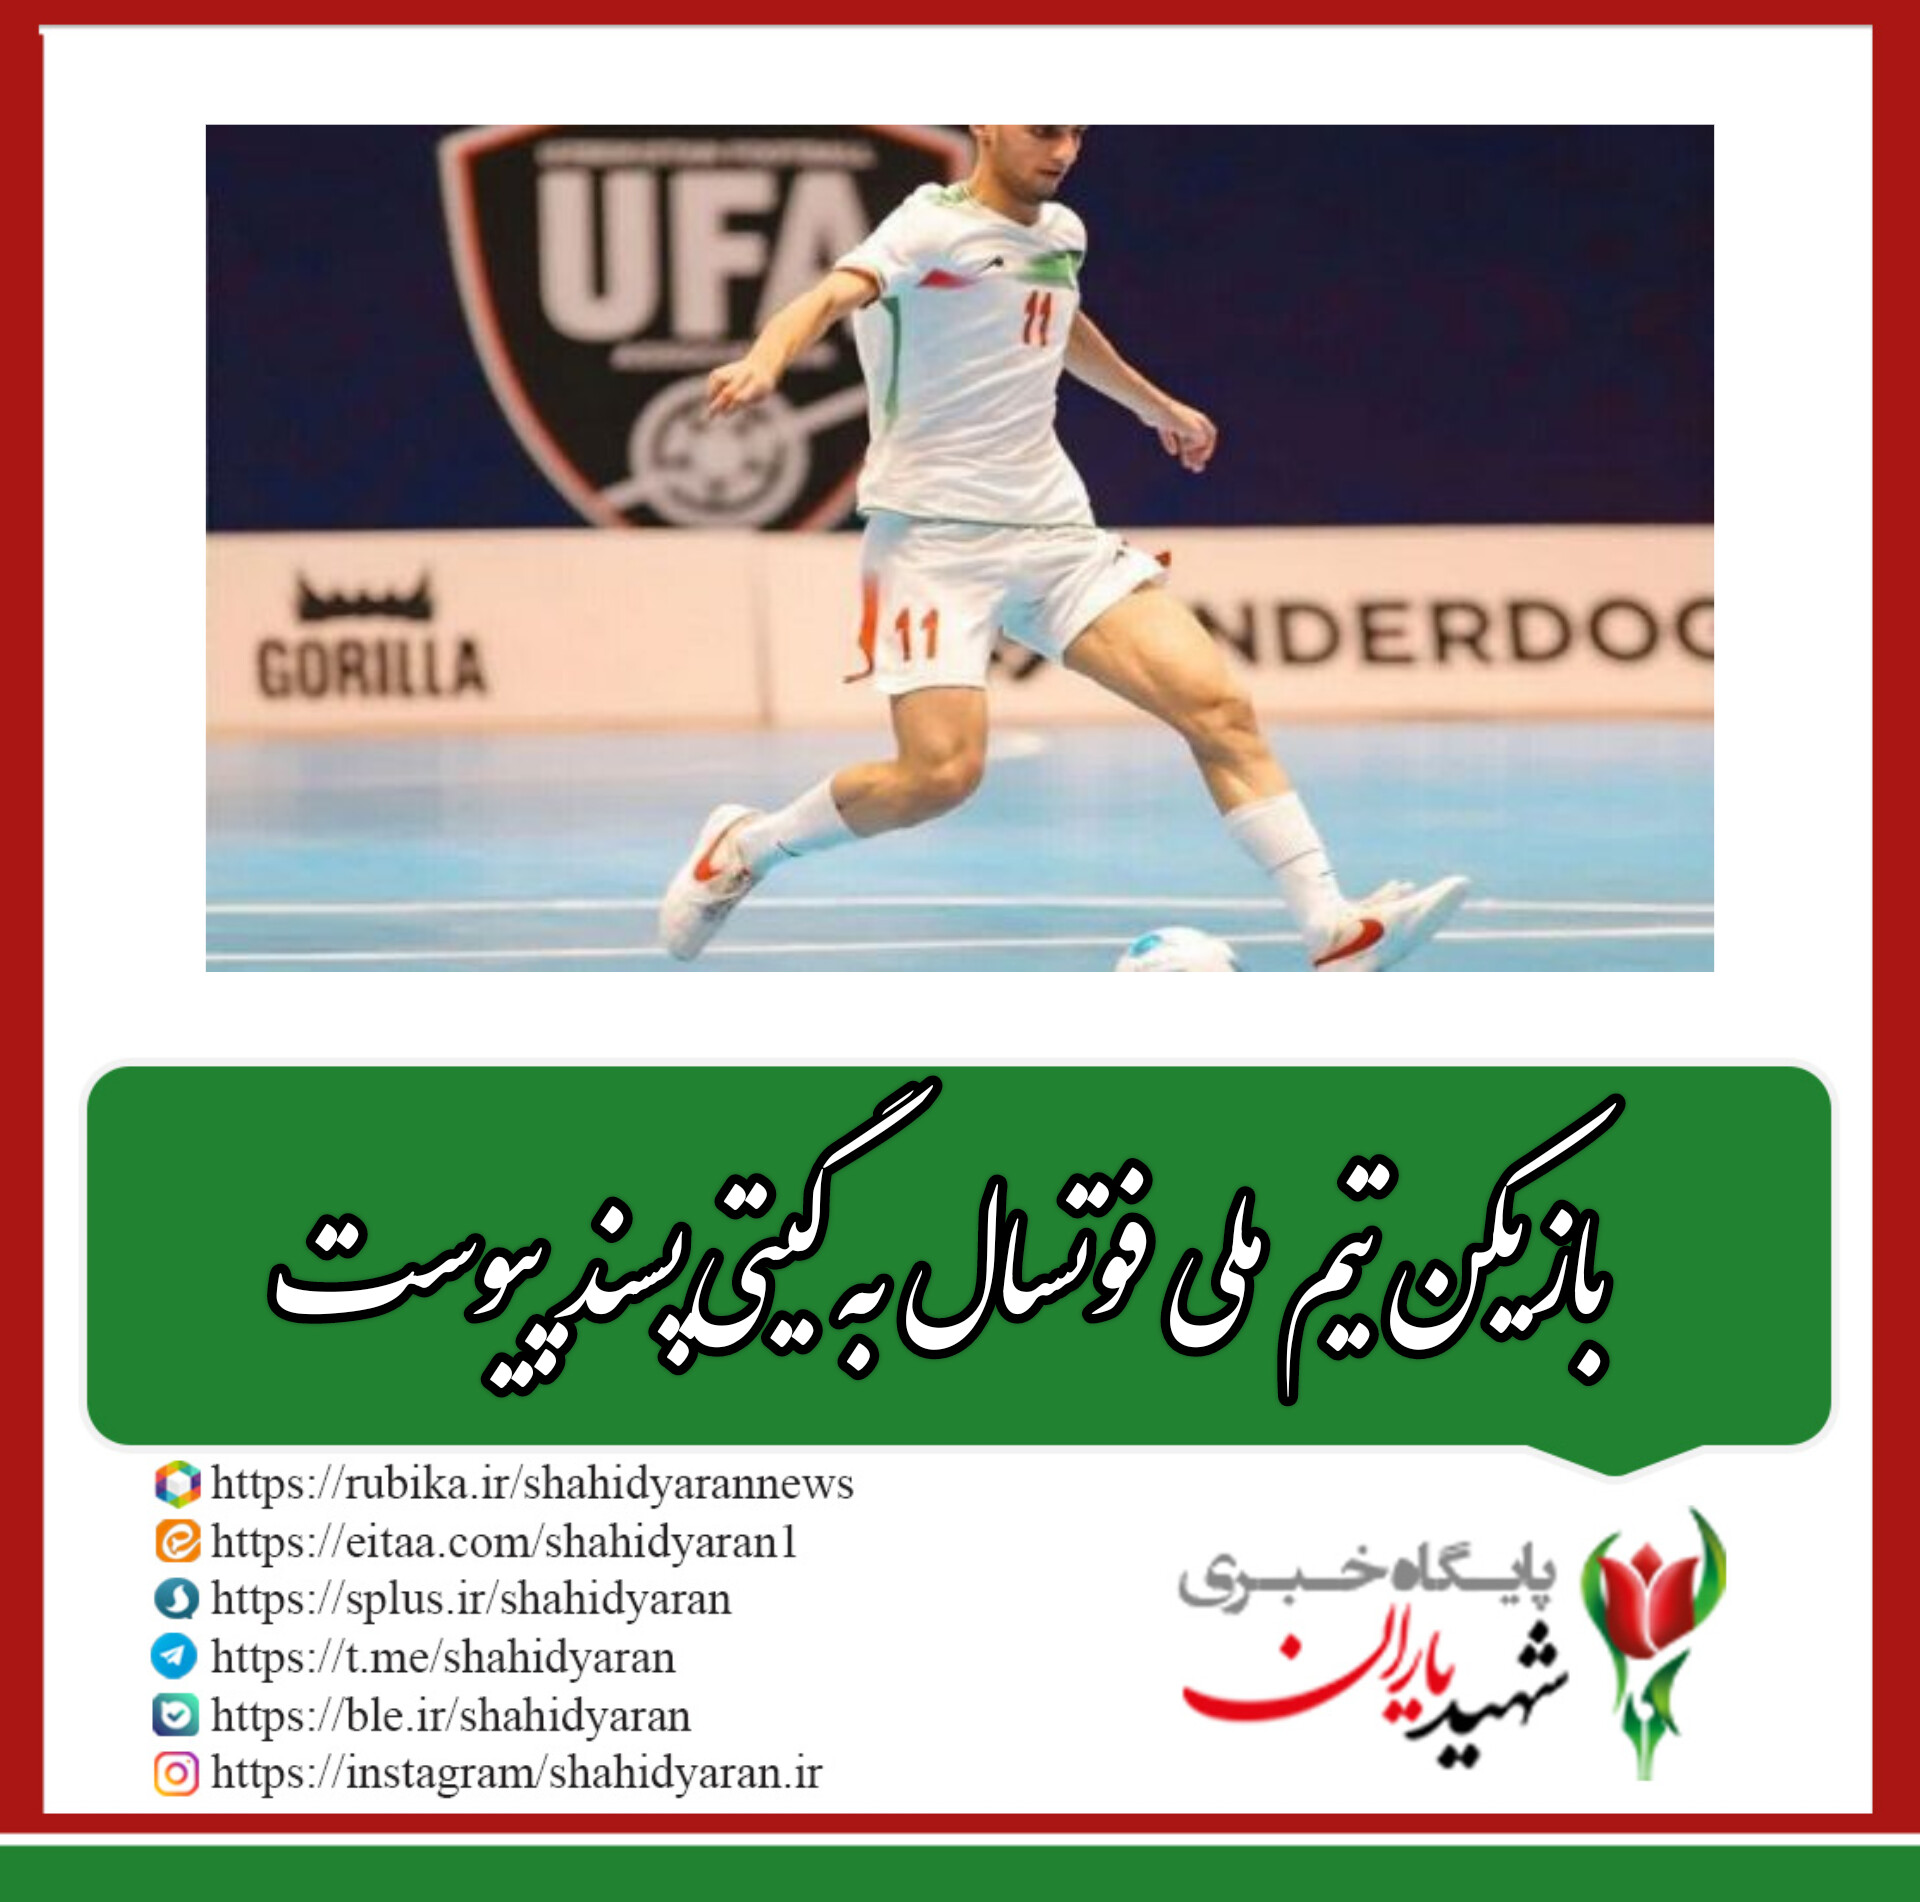 باشگاه گیتی پسند اصفهان اعلام کرد: